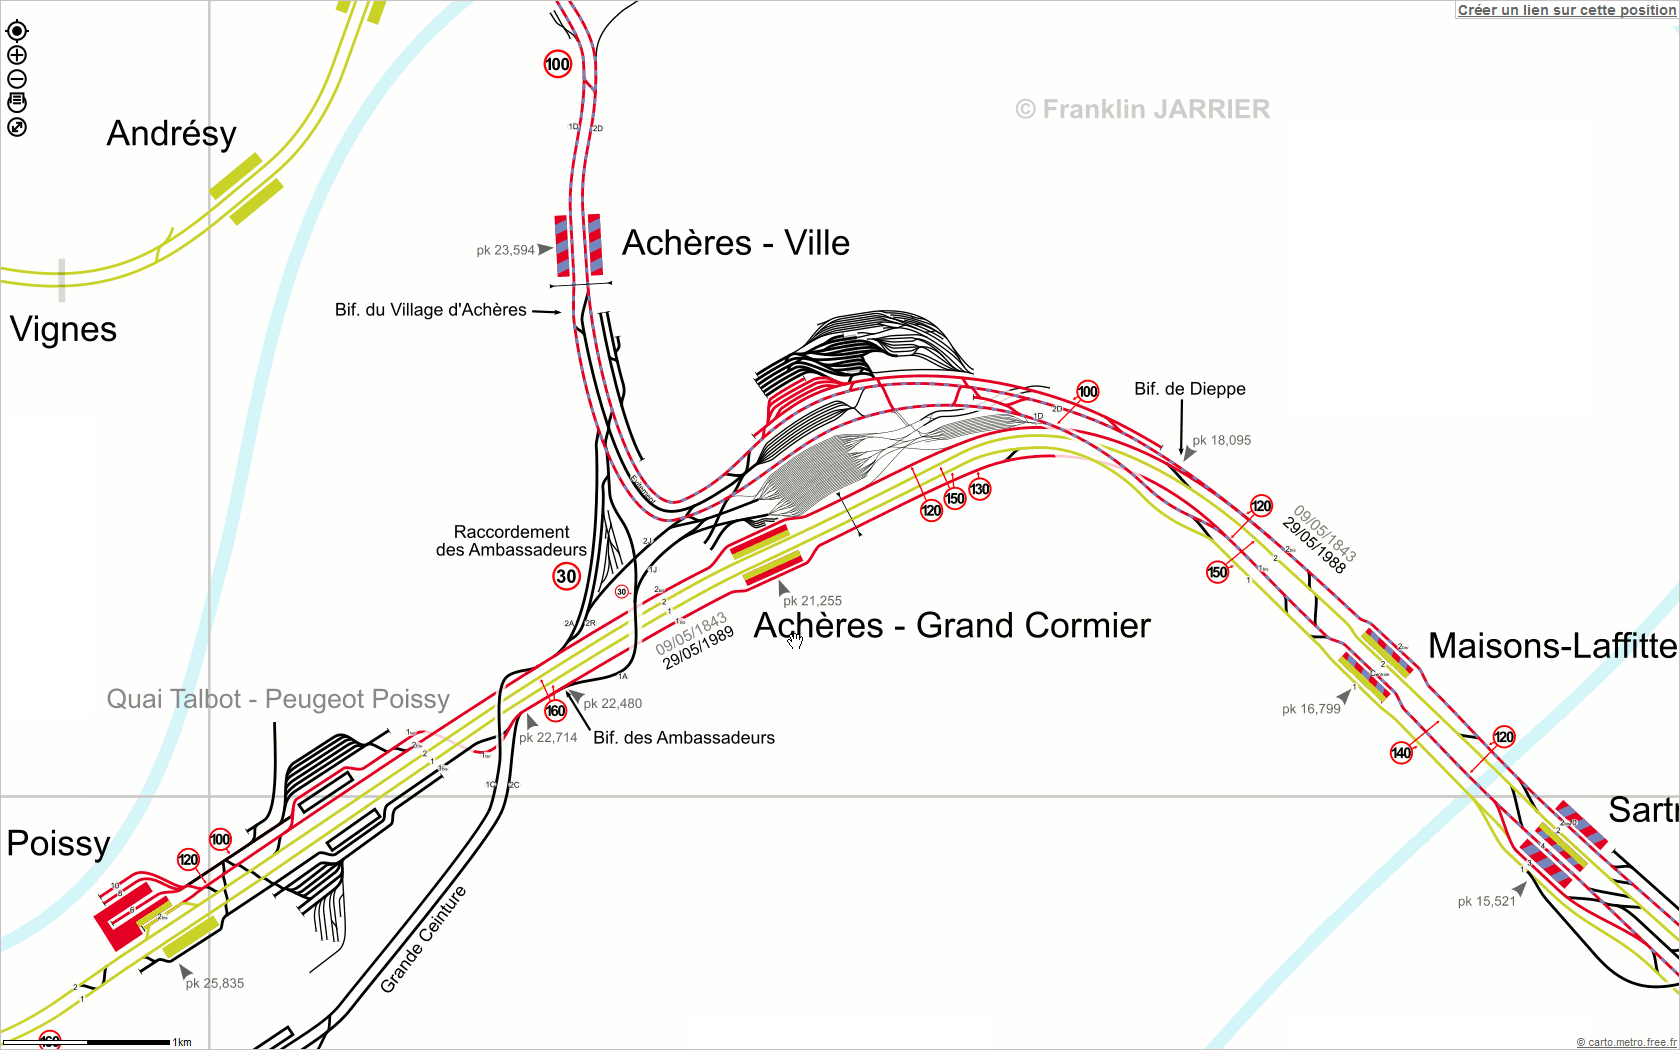 On voit bien que le RER A, dans la direction de Cergy, quitte la ligne de Paris - Normandie après la gare de Maisons-Laffitte pour se diriger vers la gare de Achères-Ville.